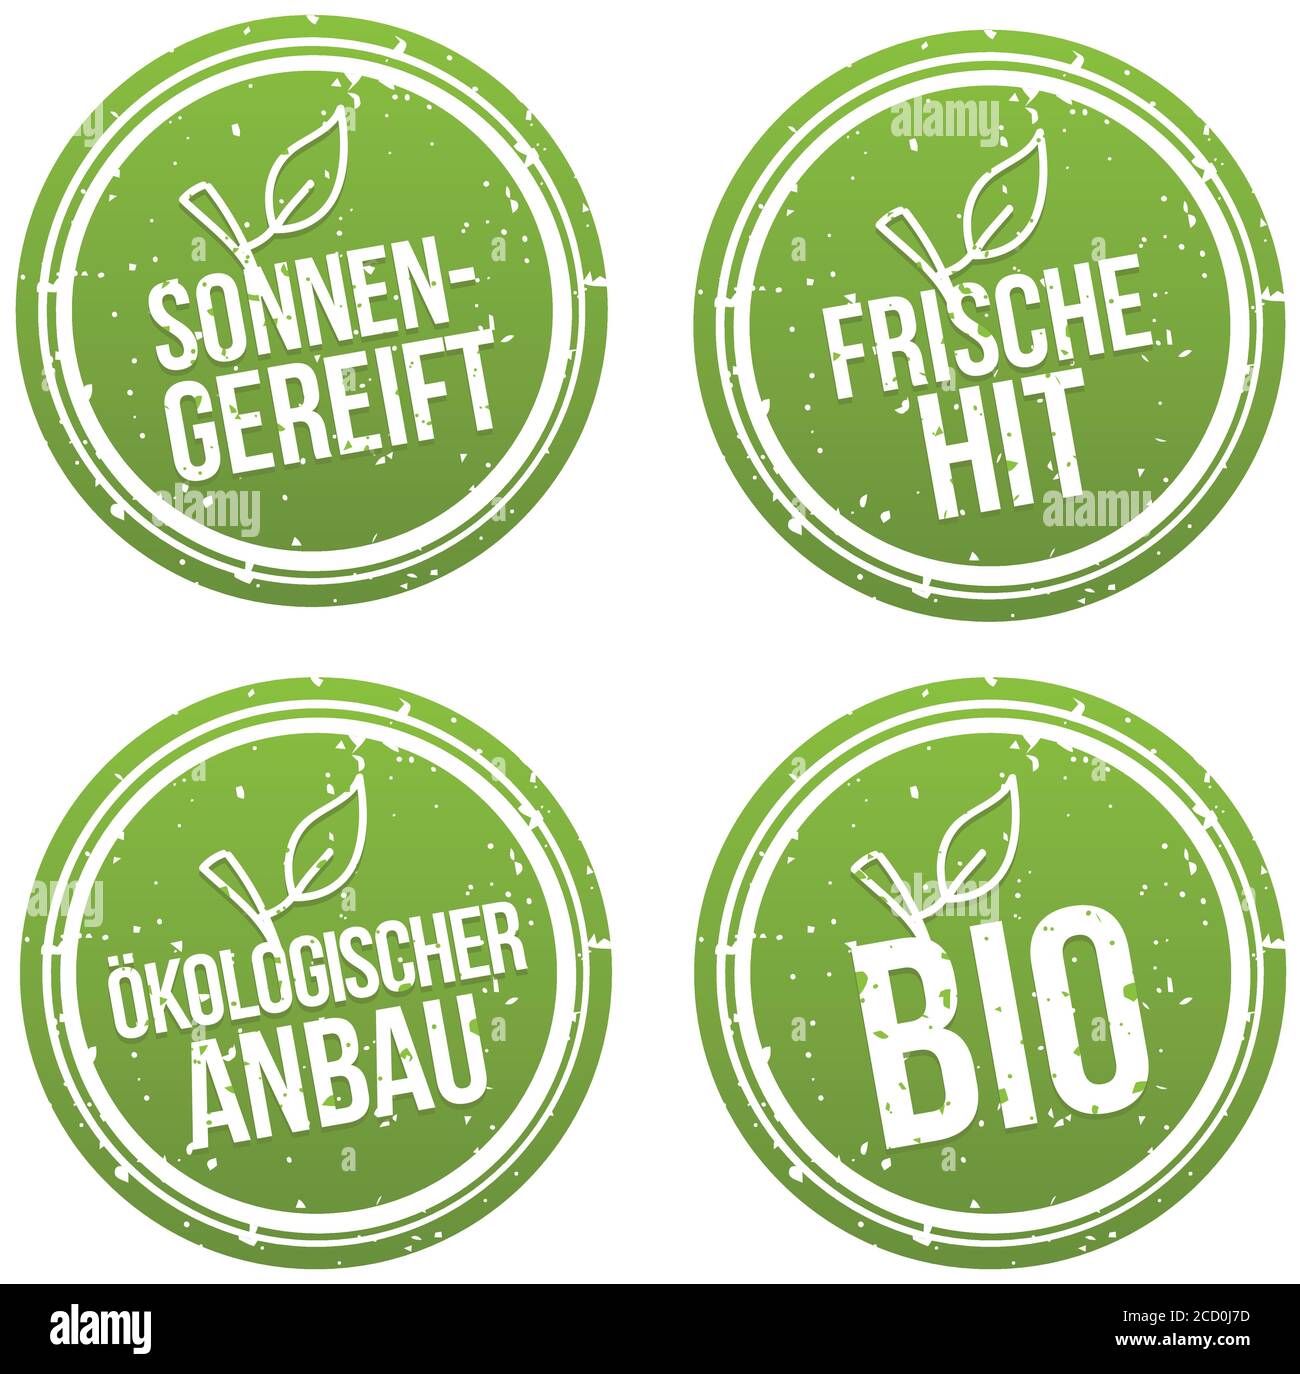 Sonnengereift, Friche Hit, Ökologischer Anbau und Bio Banner Set. Ilustración del Vector